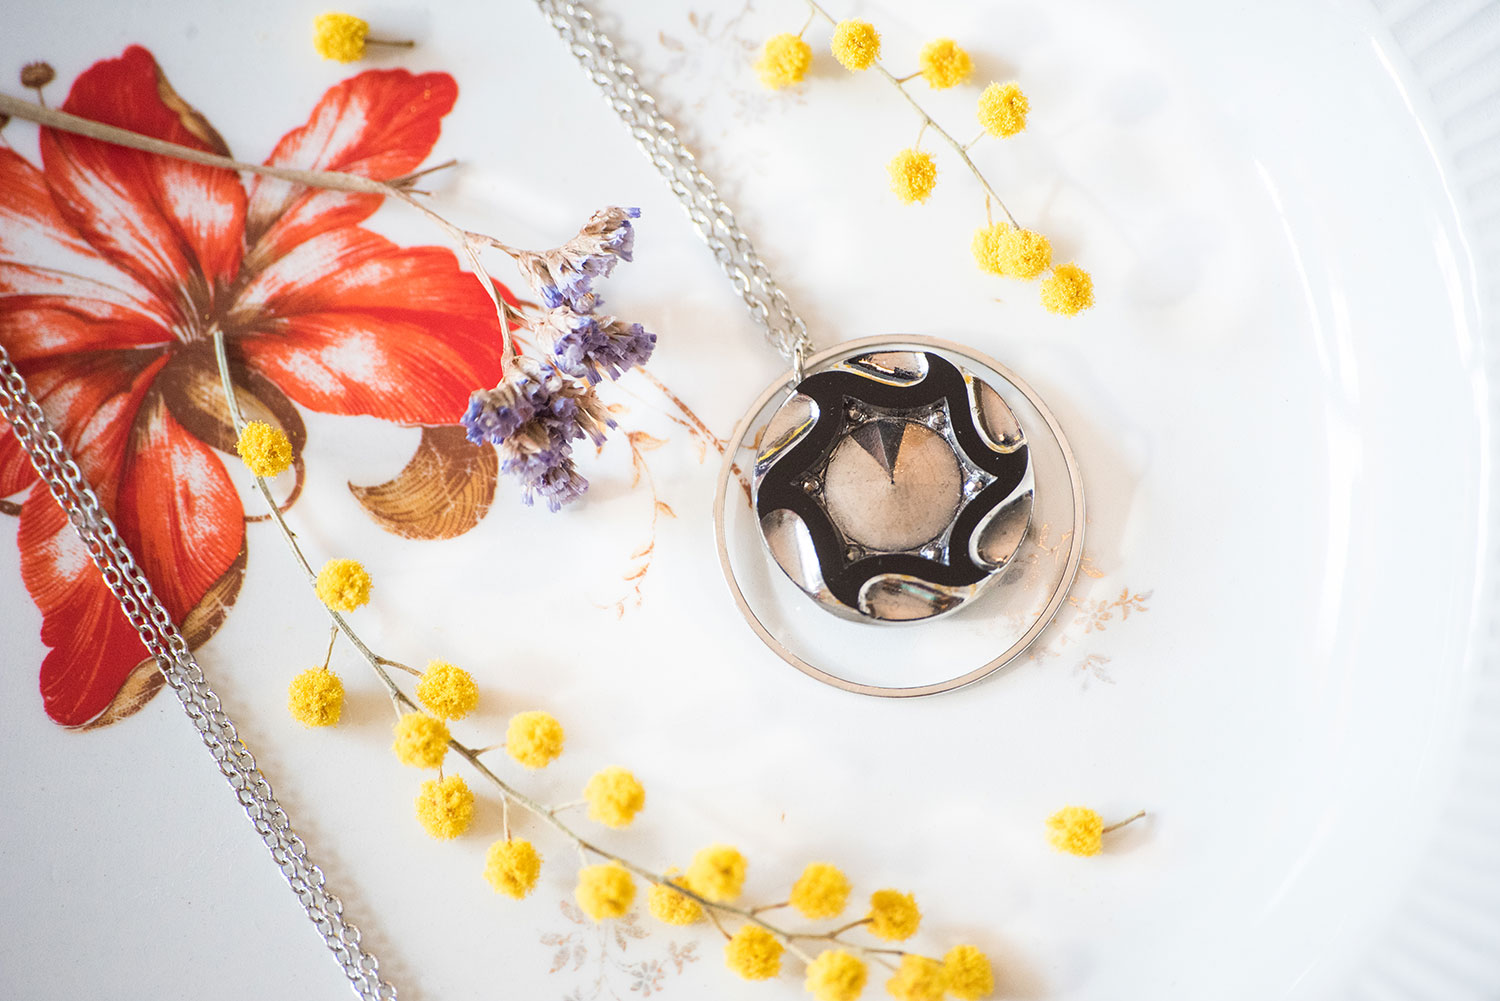 Assuna – Sautoir Astre Marcelle argent – bouton ancien 1920 – collier long d’inspiration vintage en forme d’ellipse